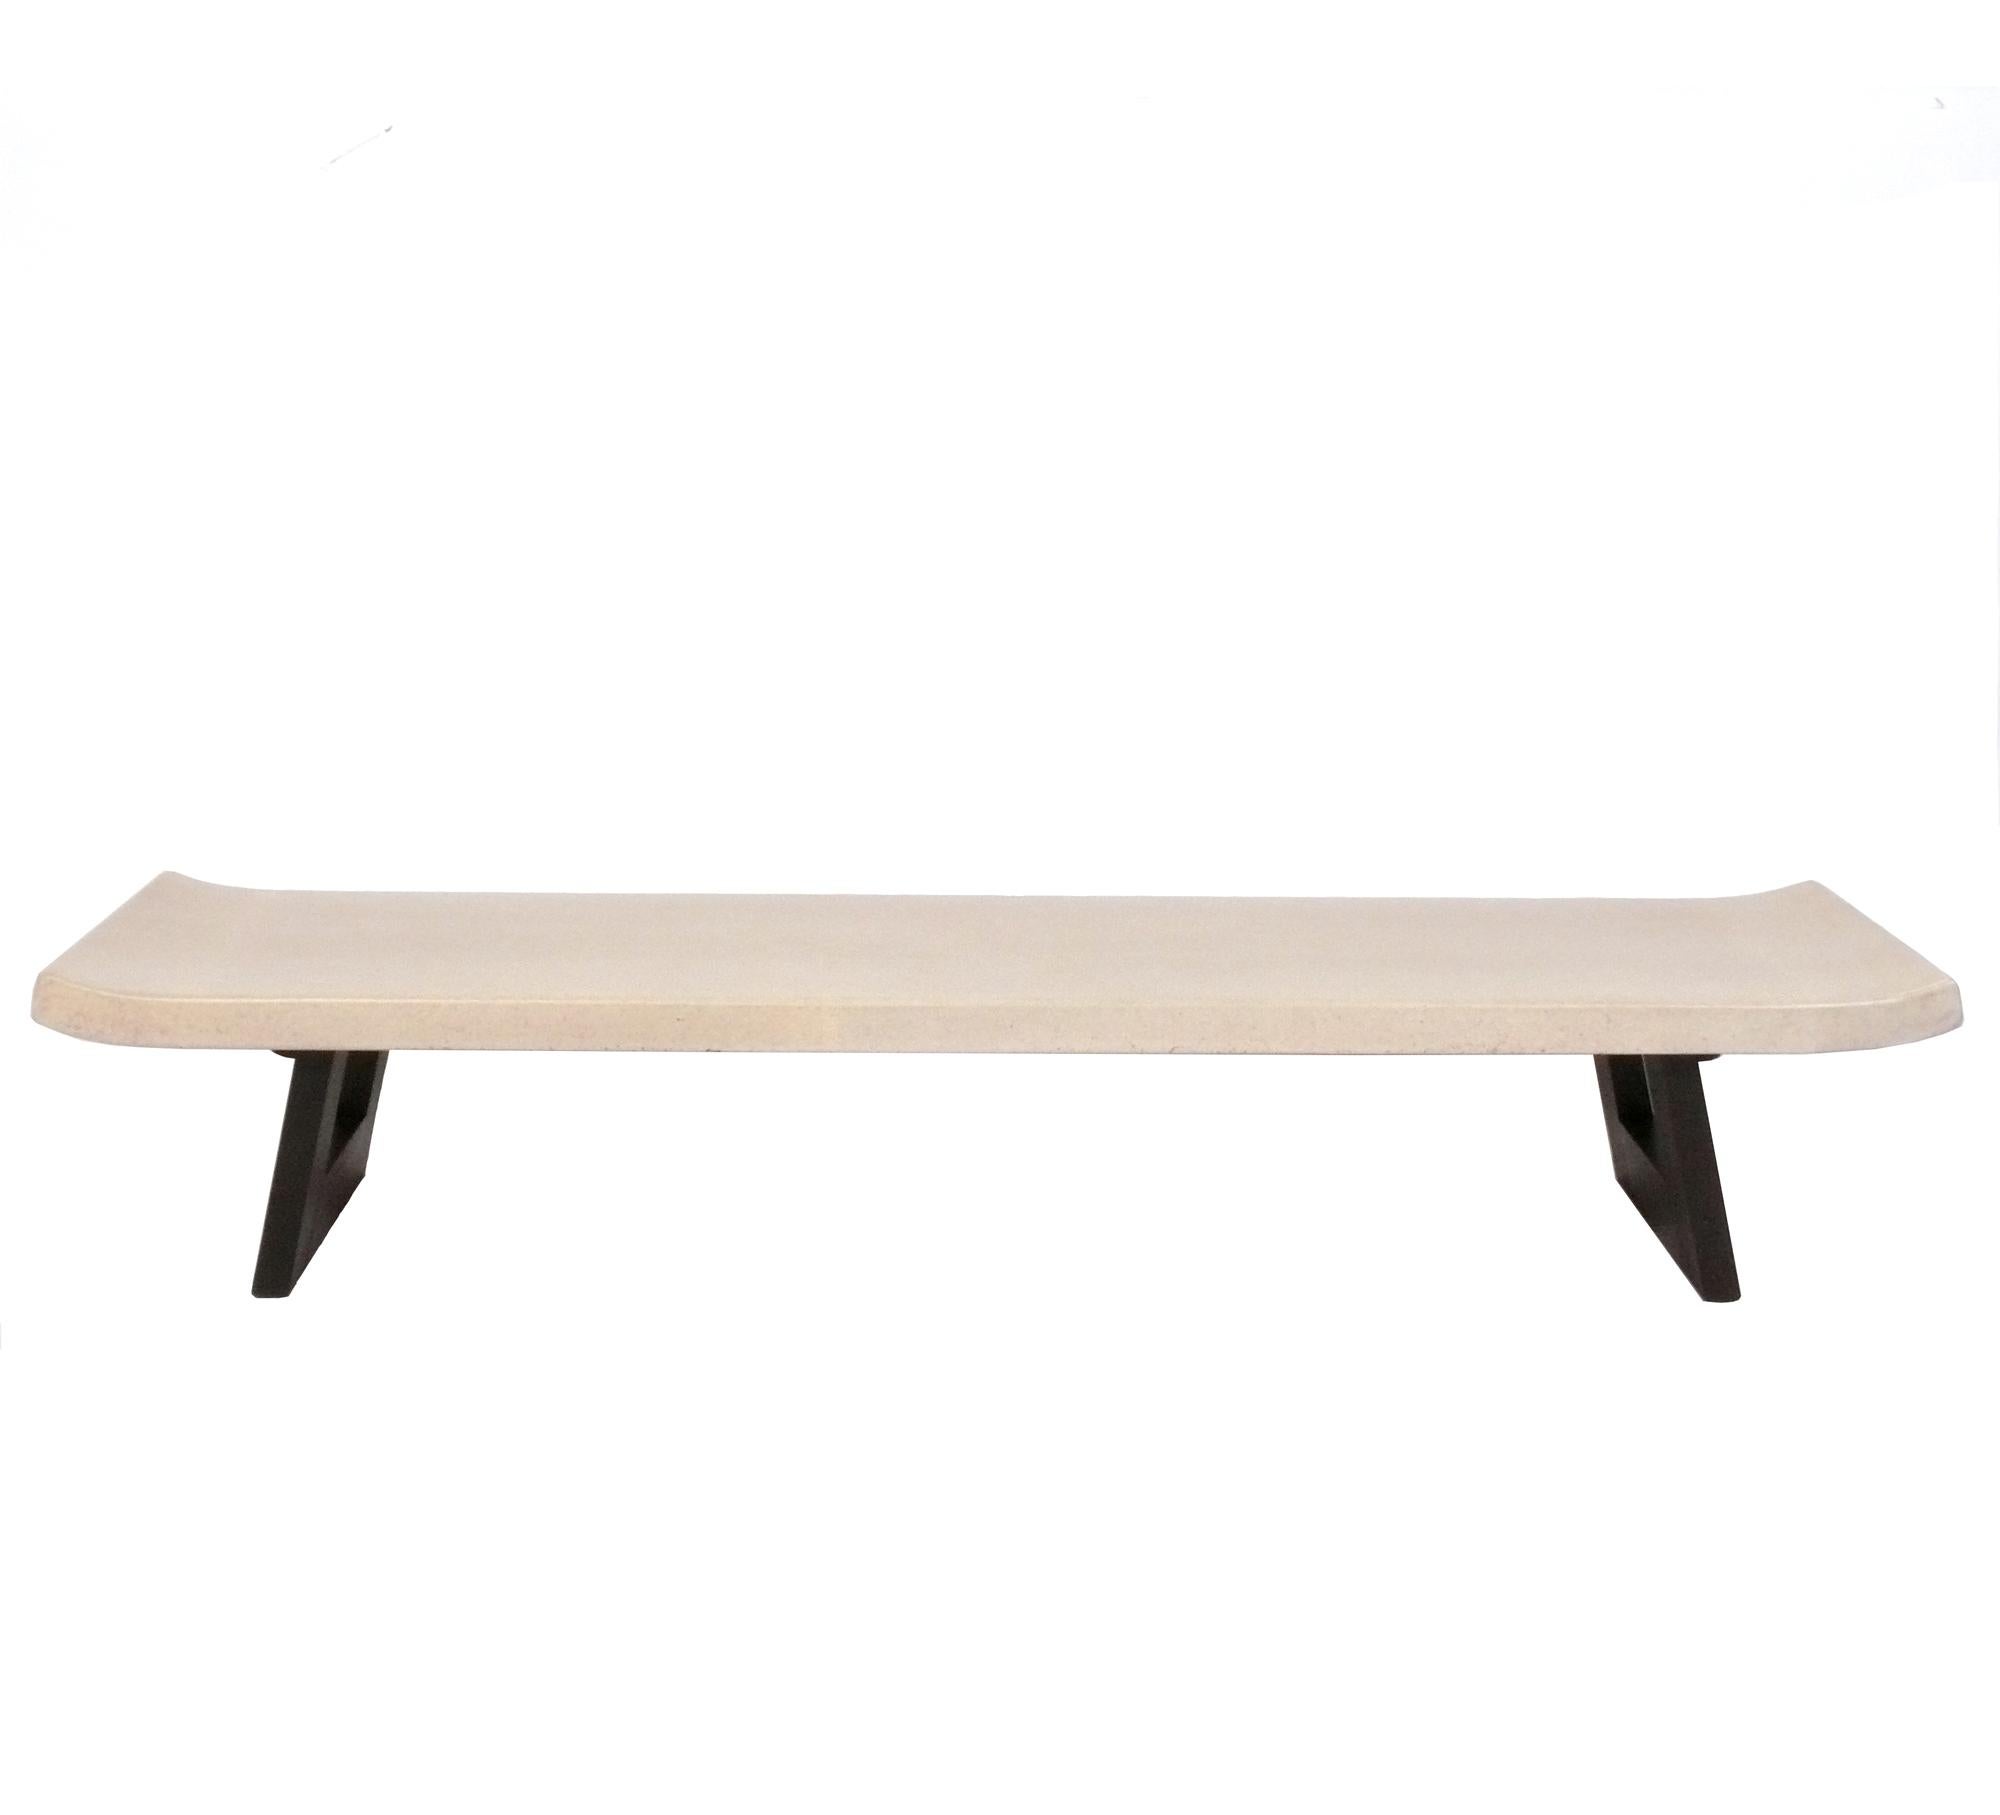 Table basse ou banc curviligne en liège, conçu par Paul Frankl pour Johnson Furniture, américain, vers les années 1940. Cette pièce a été récemment rénovée et est prête à l'emploi. 